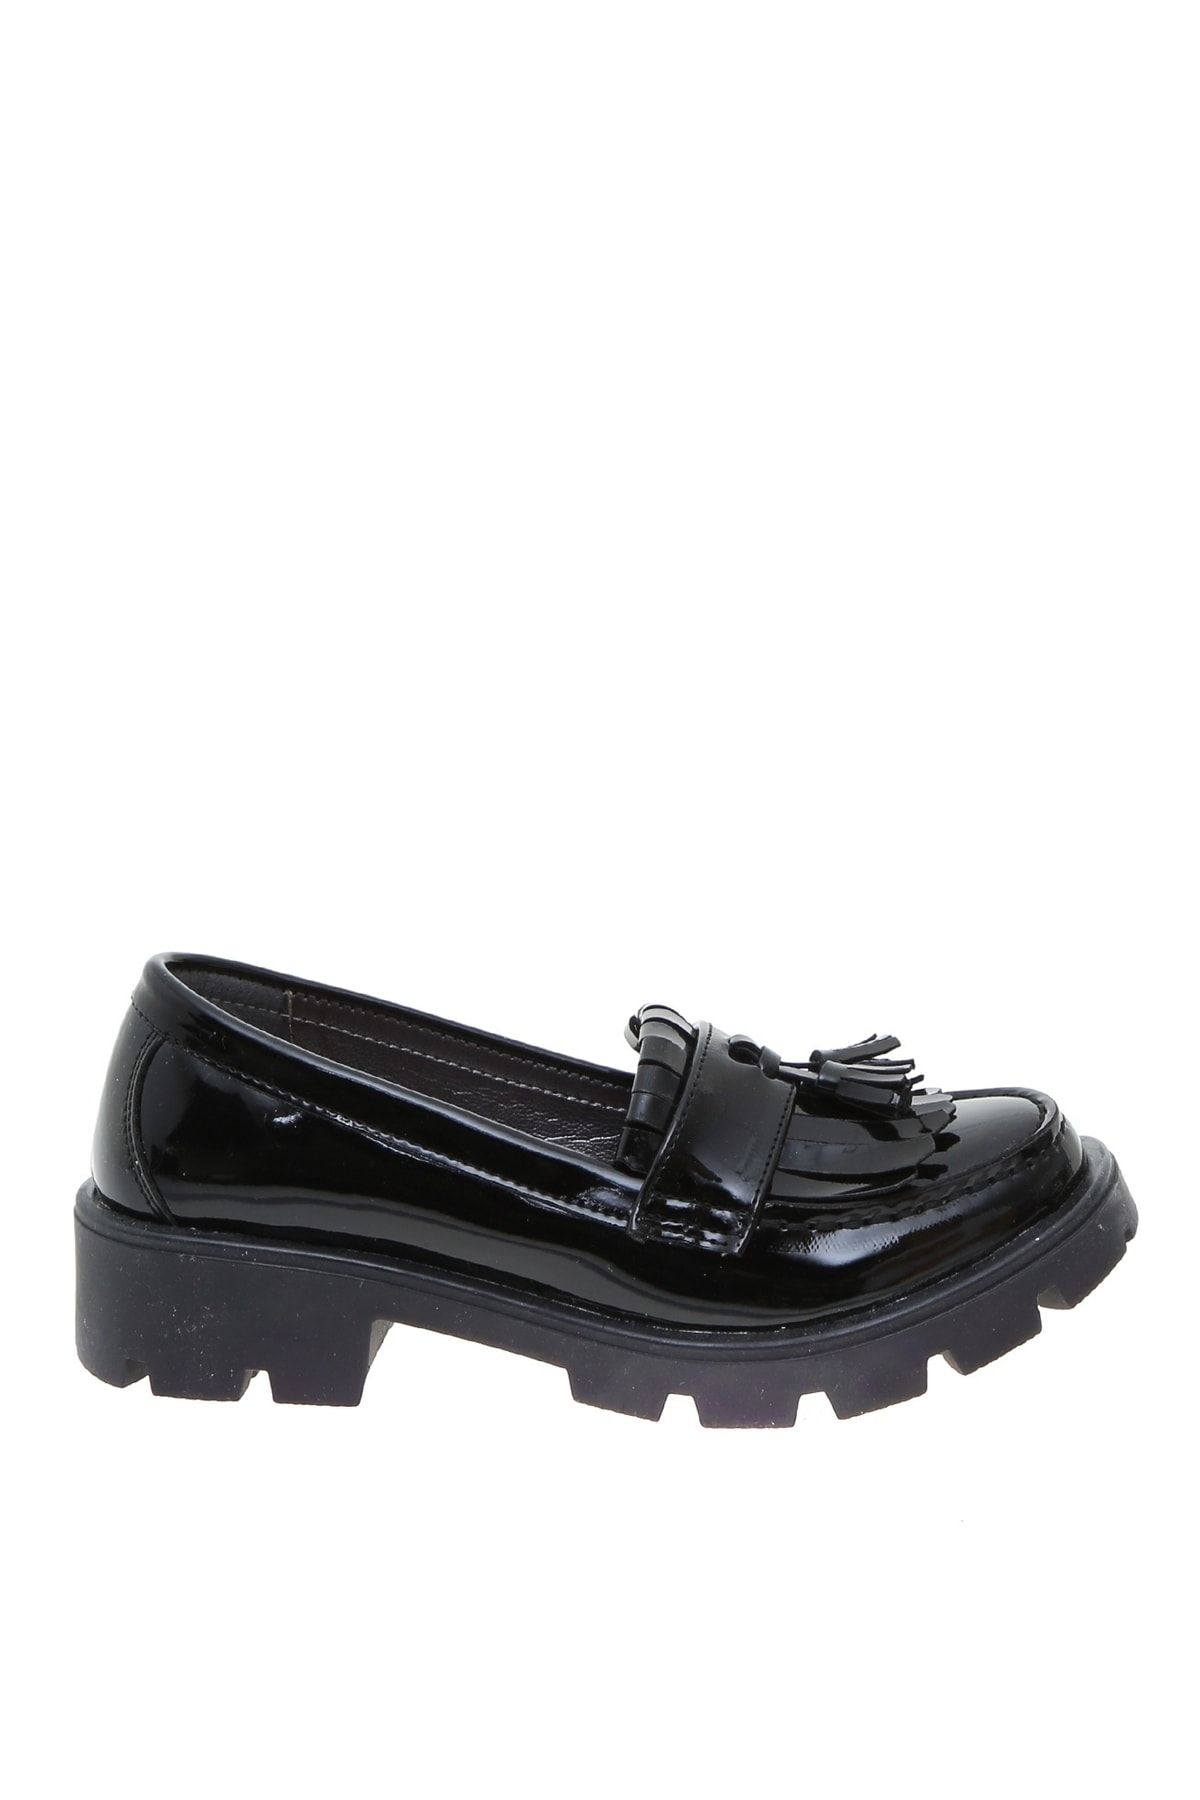 LİMON COMPANY Limon Kız Çocuk Siyah Klasik Ayakkabı